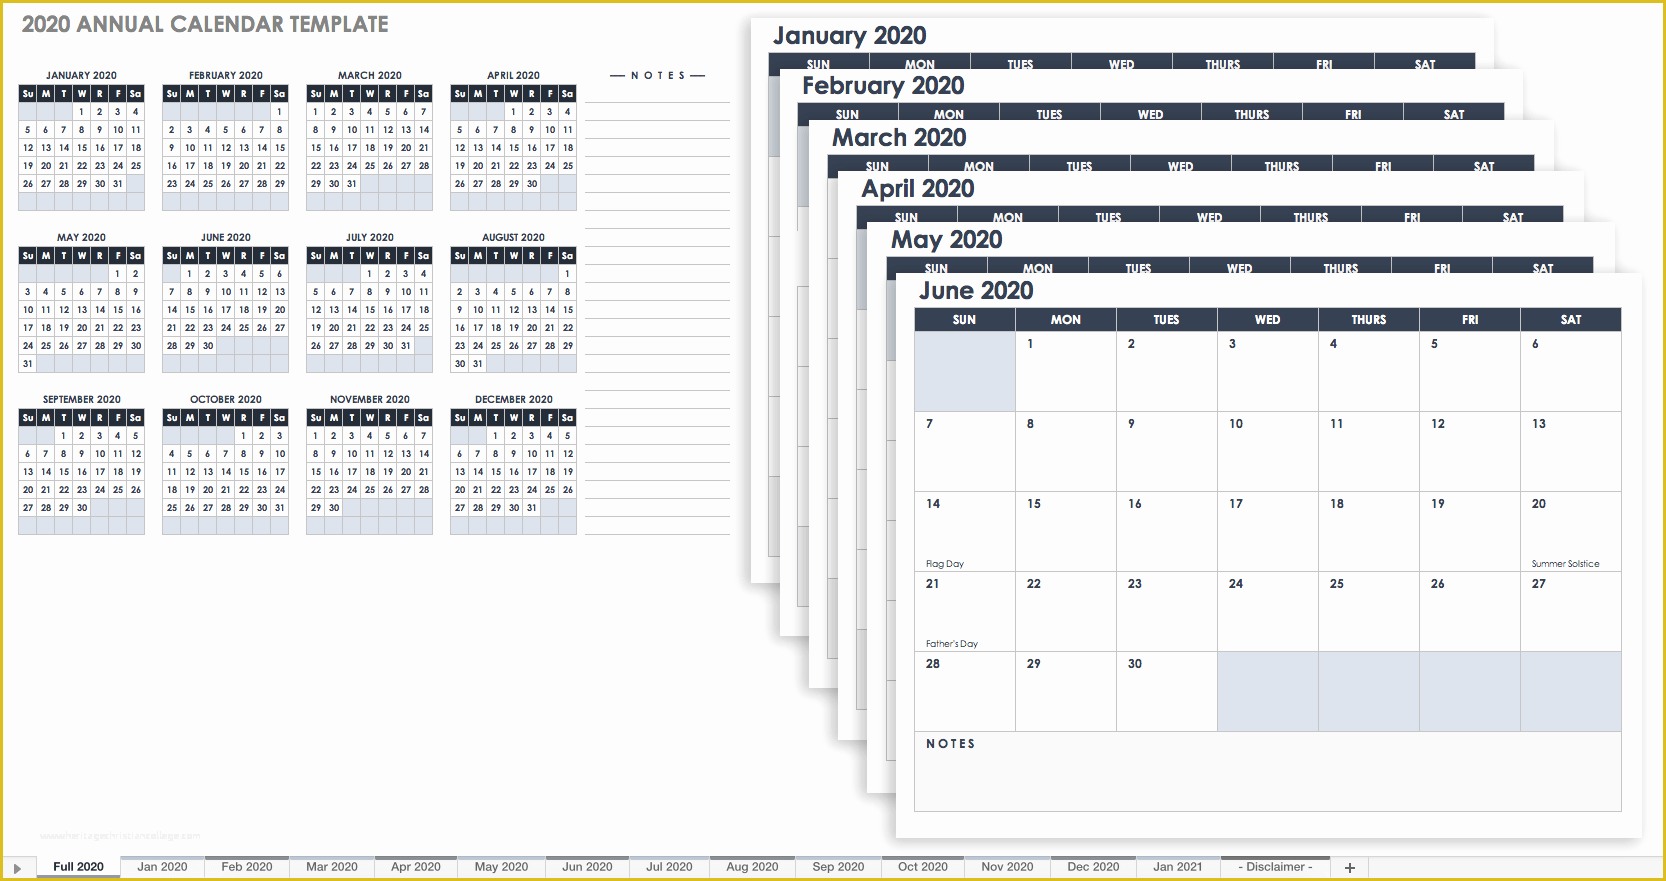 Free 3 Week Look Ahead Schedule Template Of Free Excel Calendar Templates